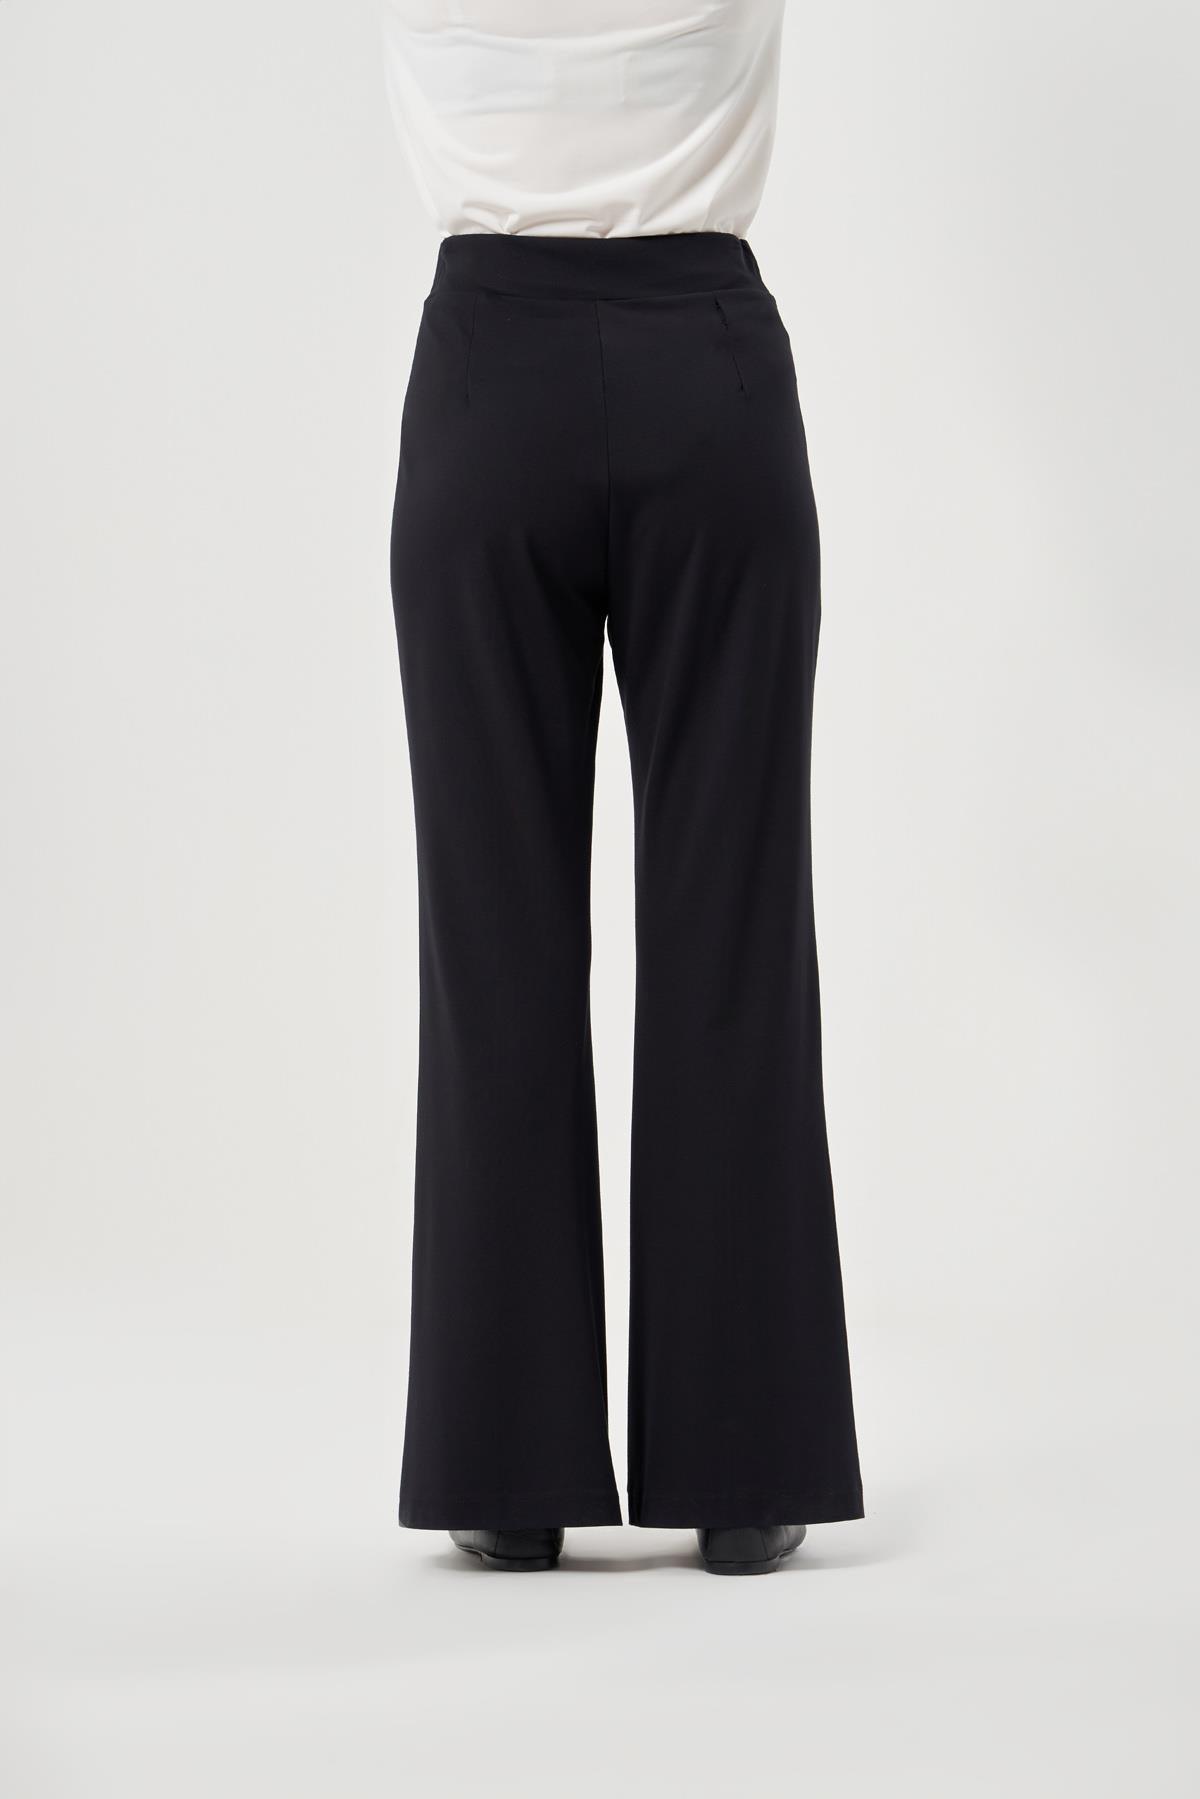 Misswhence Yüksek Bel Nervürlü Bol Paça Kadın Pantolon - Eser Giyim